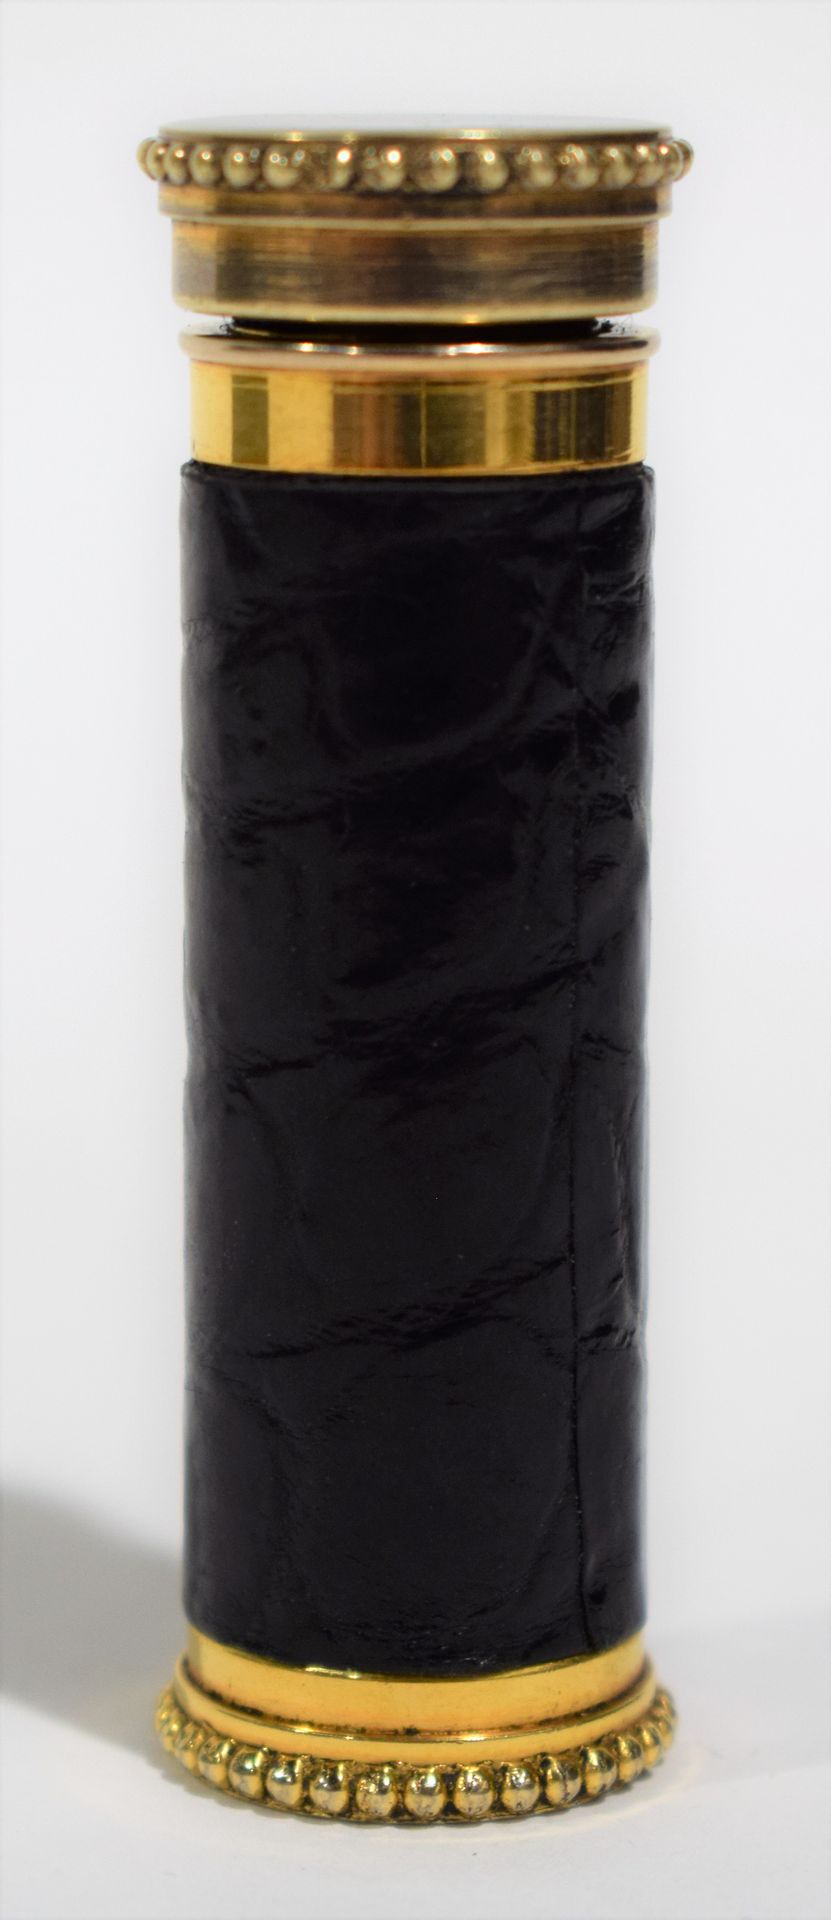 Null 气泵 "Le KID.法国"，镀金金属和黑色皮套，用于清洁相机或唱片，展开长度9厘米，带皮套